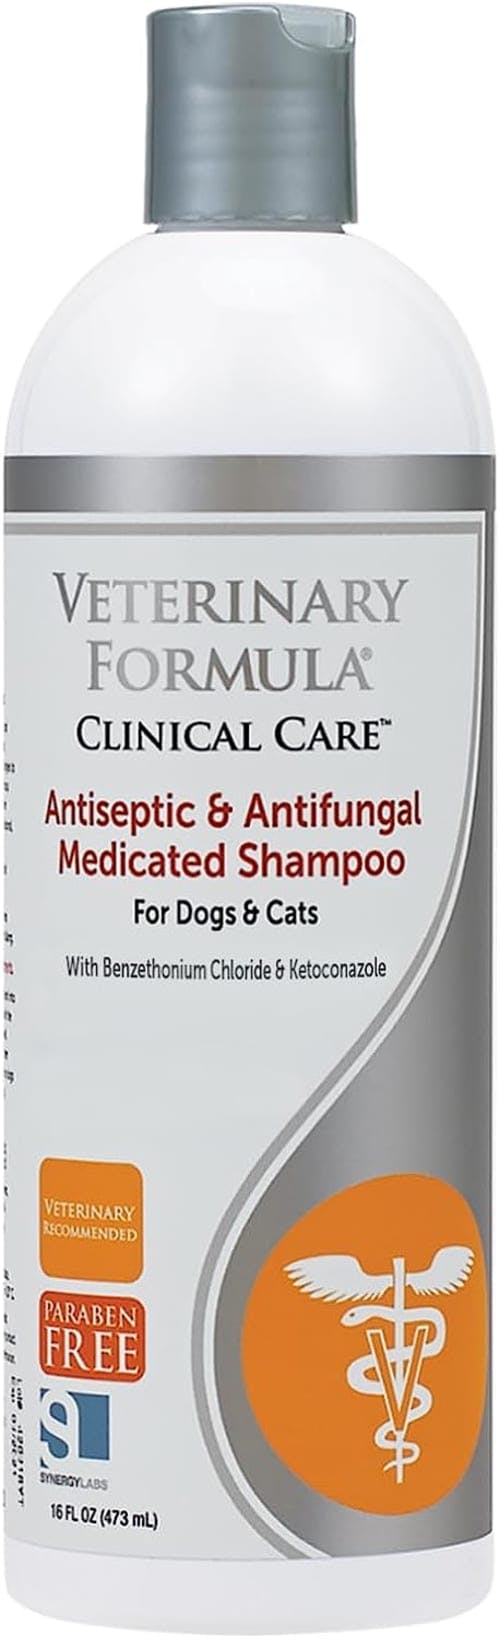 Veterinary Formula Clinical Care Dog Shampoo review